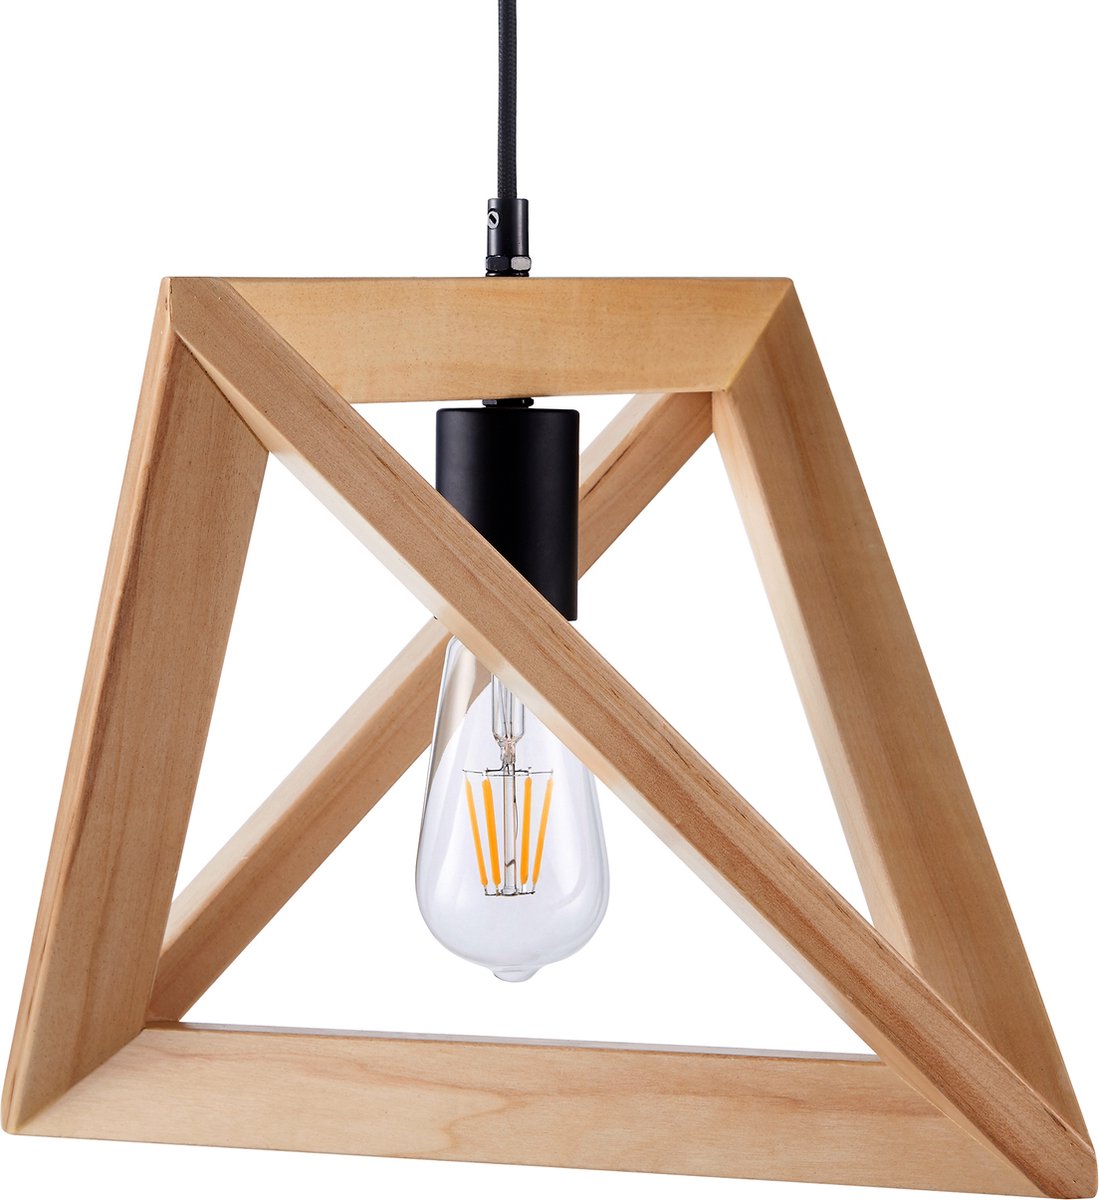 Teamson Home Esposti Hanglamp - Natuurlijke Afwerking - Modern Ontwerp